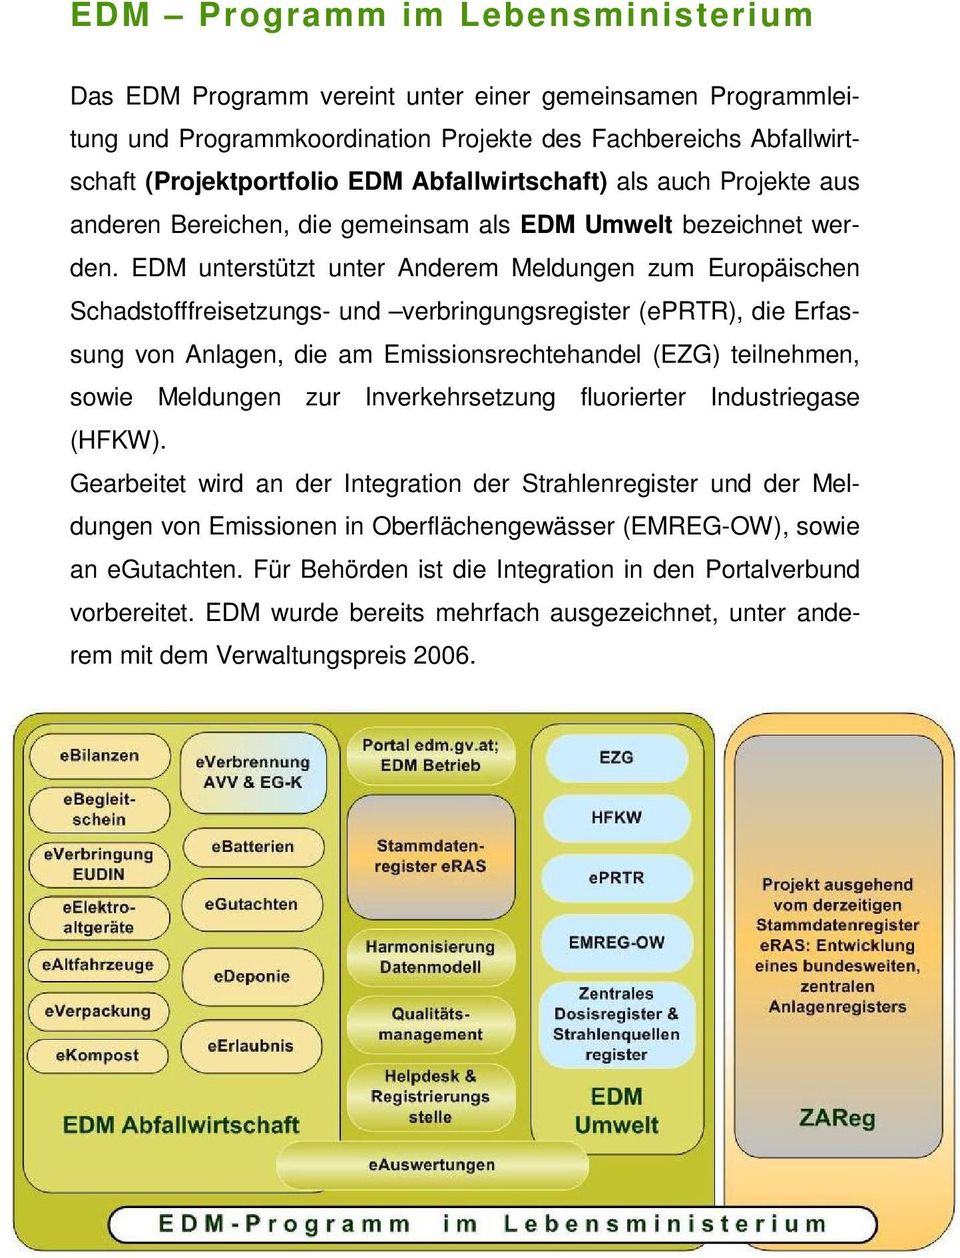 EDM unterstützt unter Anderem Meldungen zum Europäischen Schadstofffreisetzungs- und verbringungsregister (eprtr), die Erfassung von Anlagen, die am Emissionsrechtehandel (EZG) teilnehmen, sowie